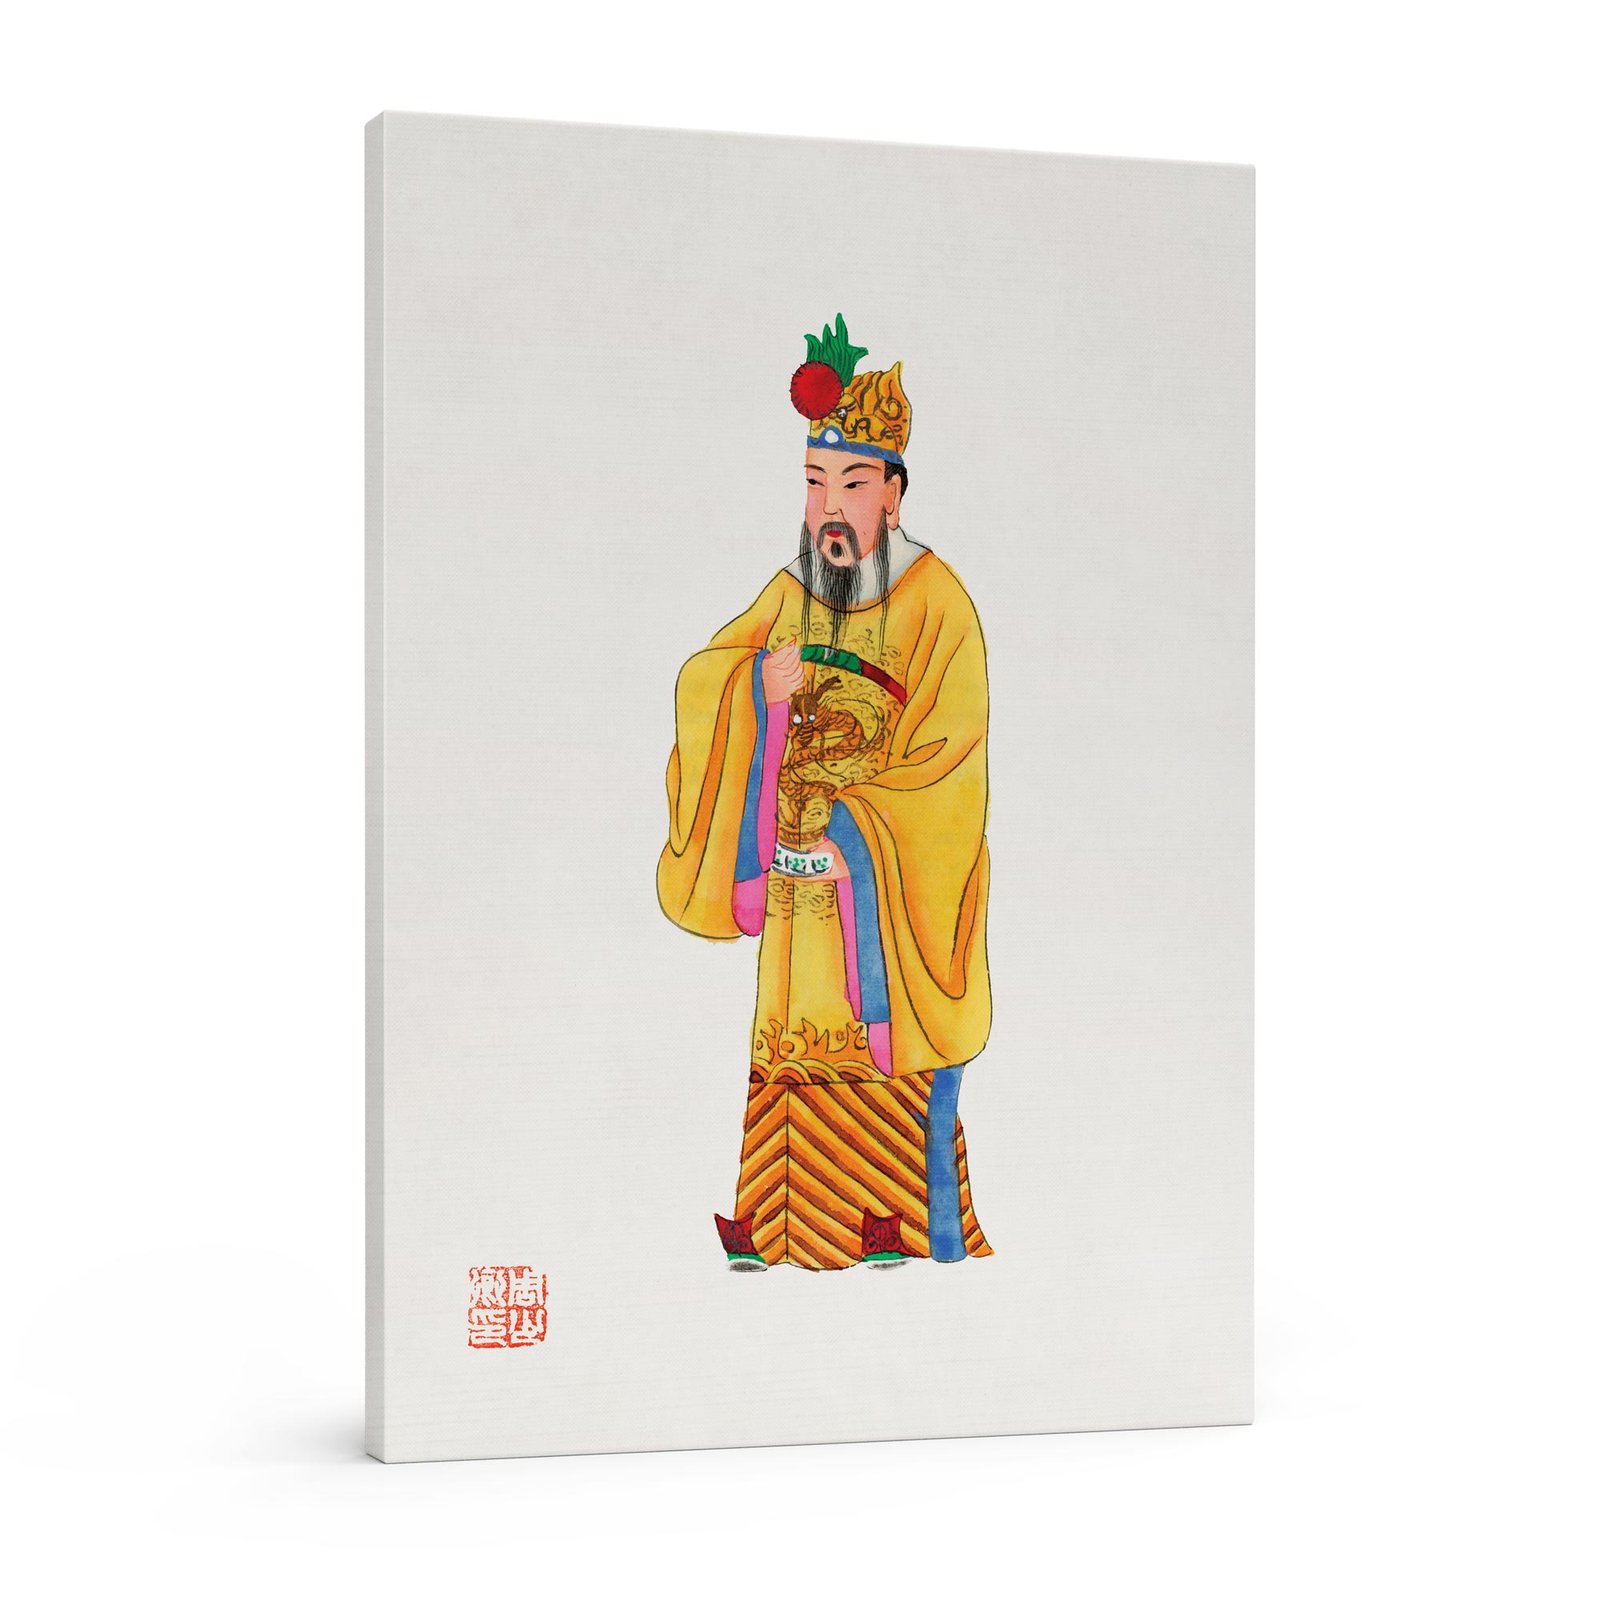 110 minimalistinis paveikslas - Imperatoriaus apsiaustas